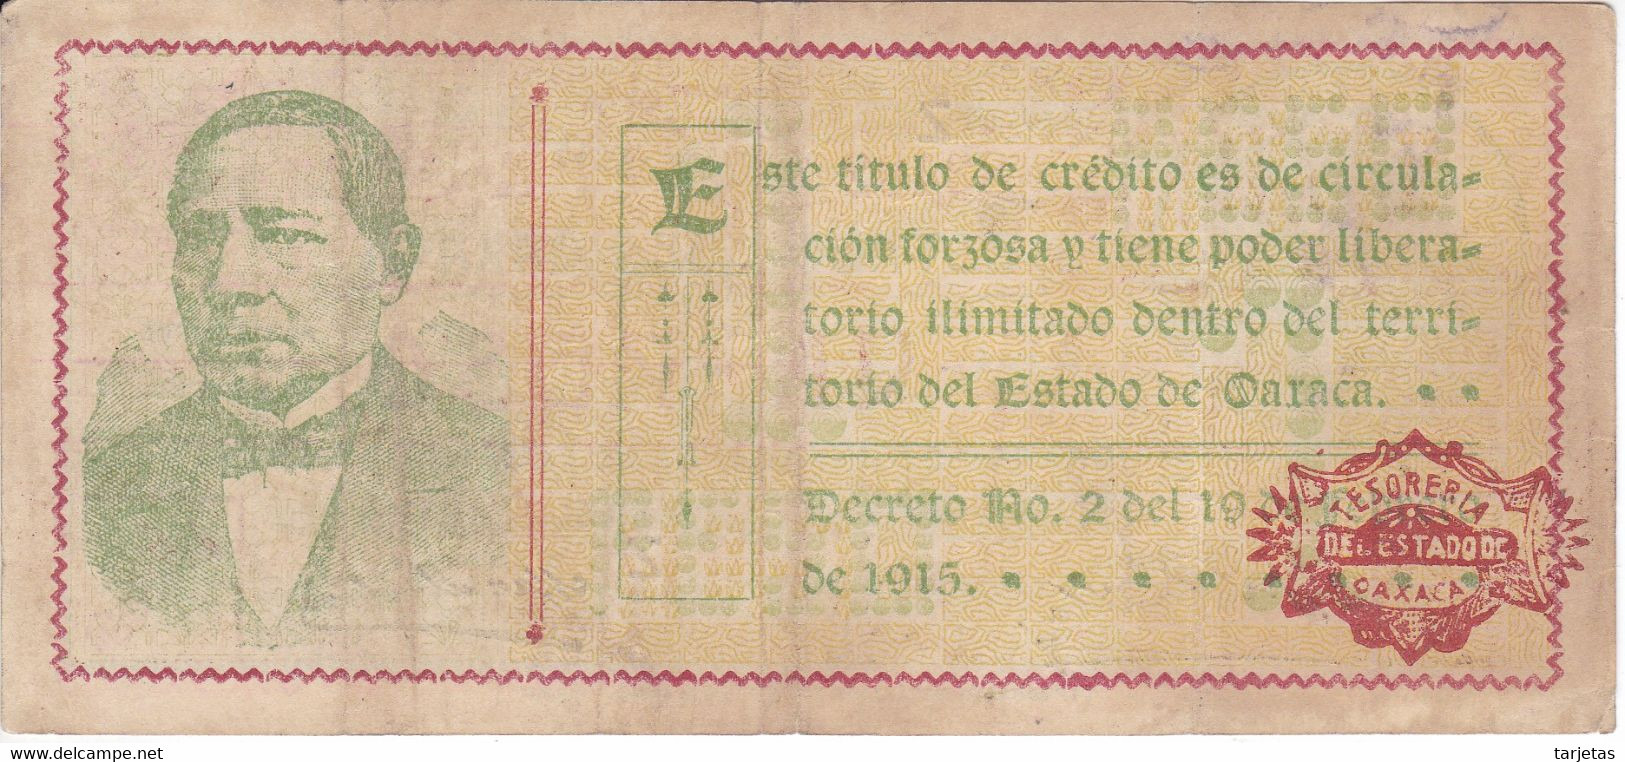 BILLETE DE MEXICO DE 1 PESO DEL ESTADO DE OAXACA DEL 24 DE FEBRERO DE 1915   (BANKNOTE) RARO - Mexico